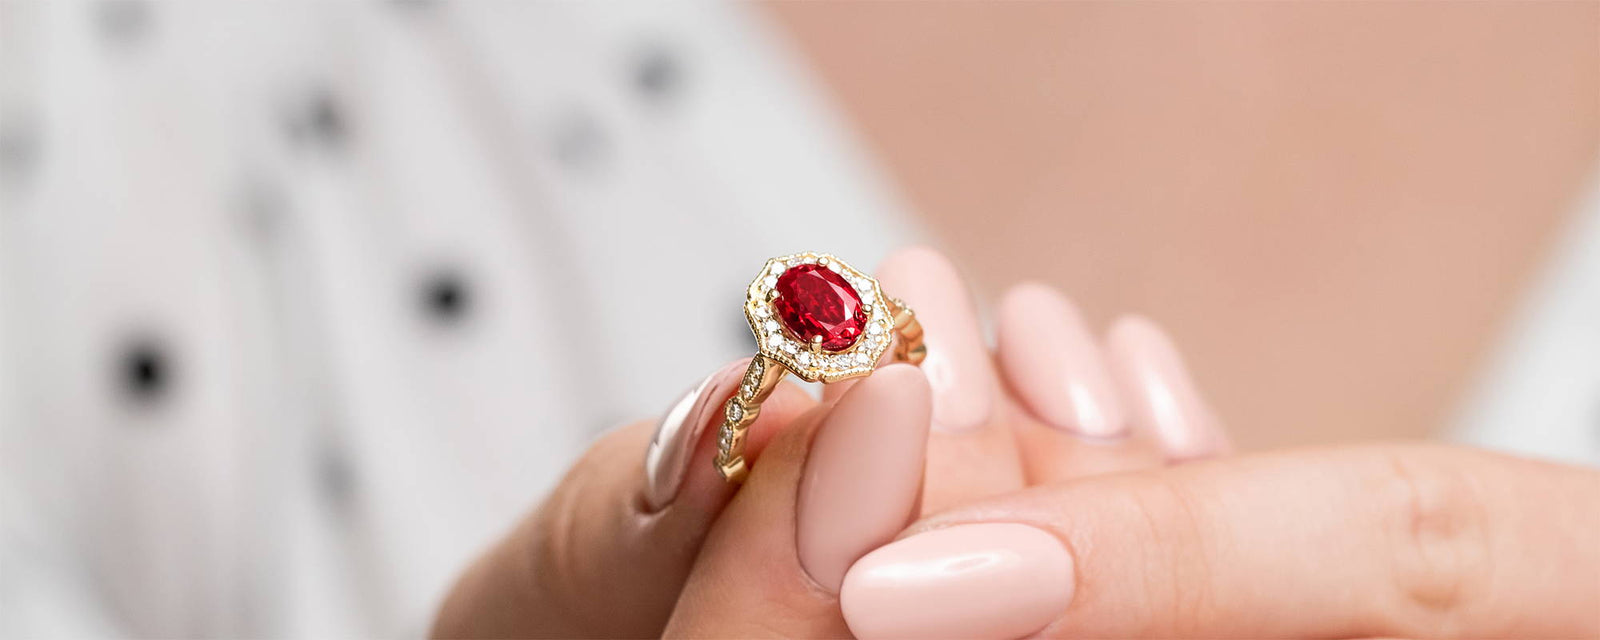 Wedding Rings For Women: 60+ Ideas For The Elegant Bride